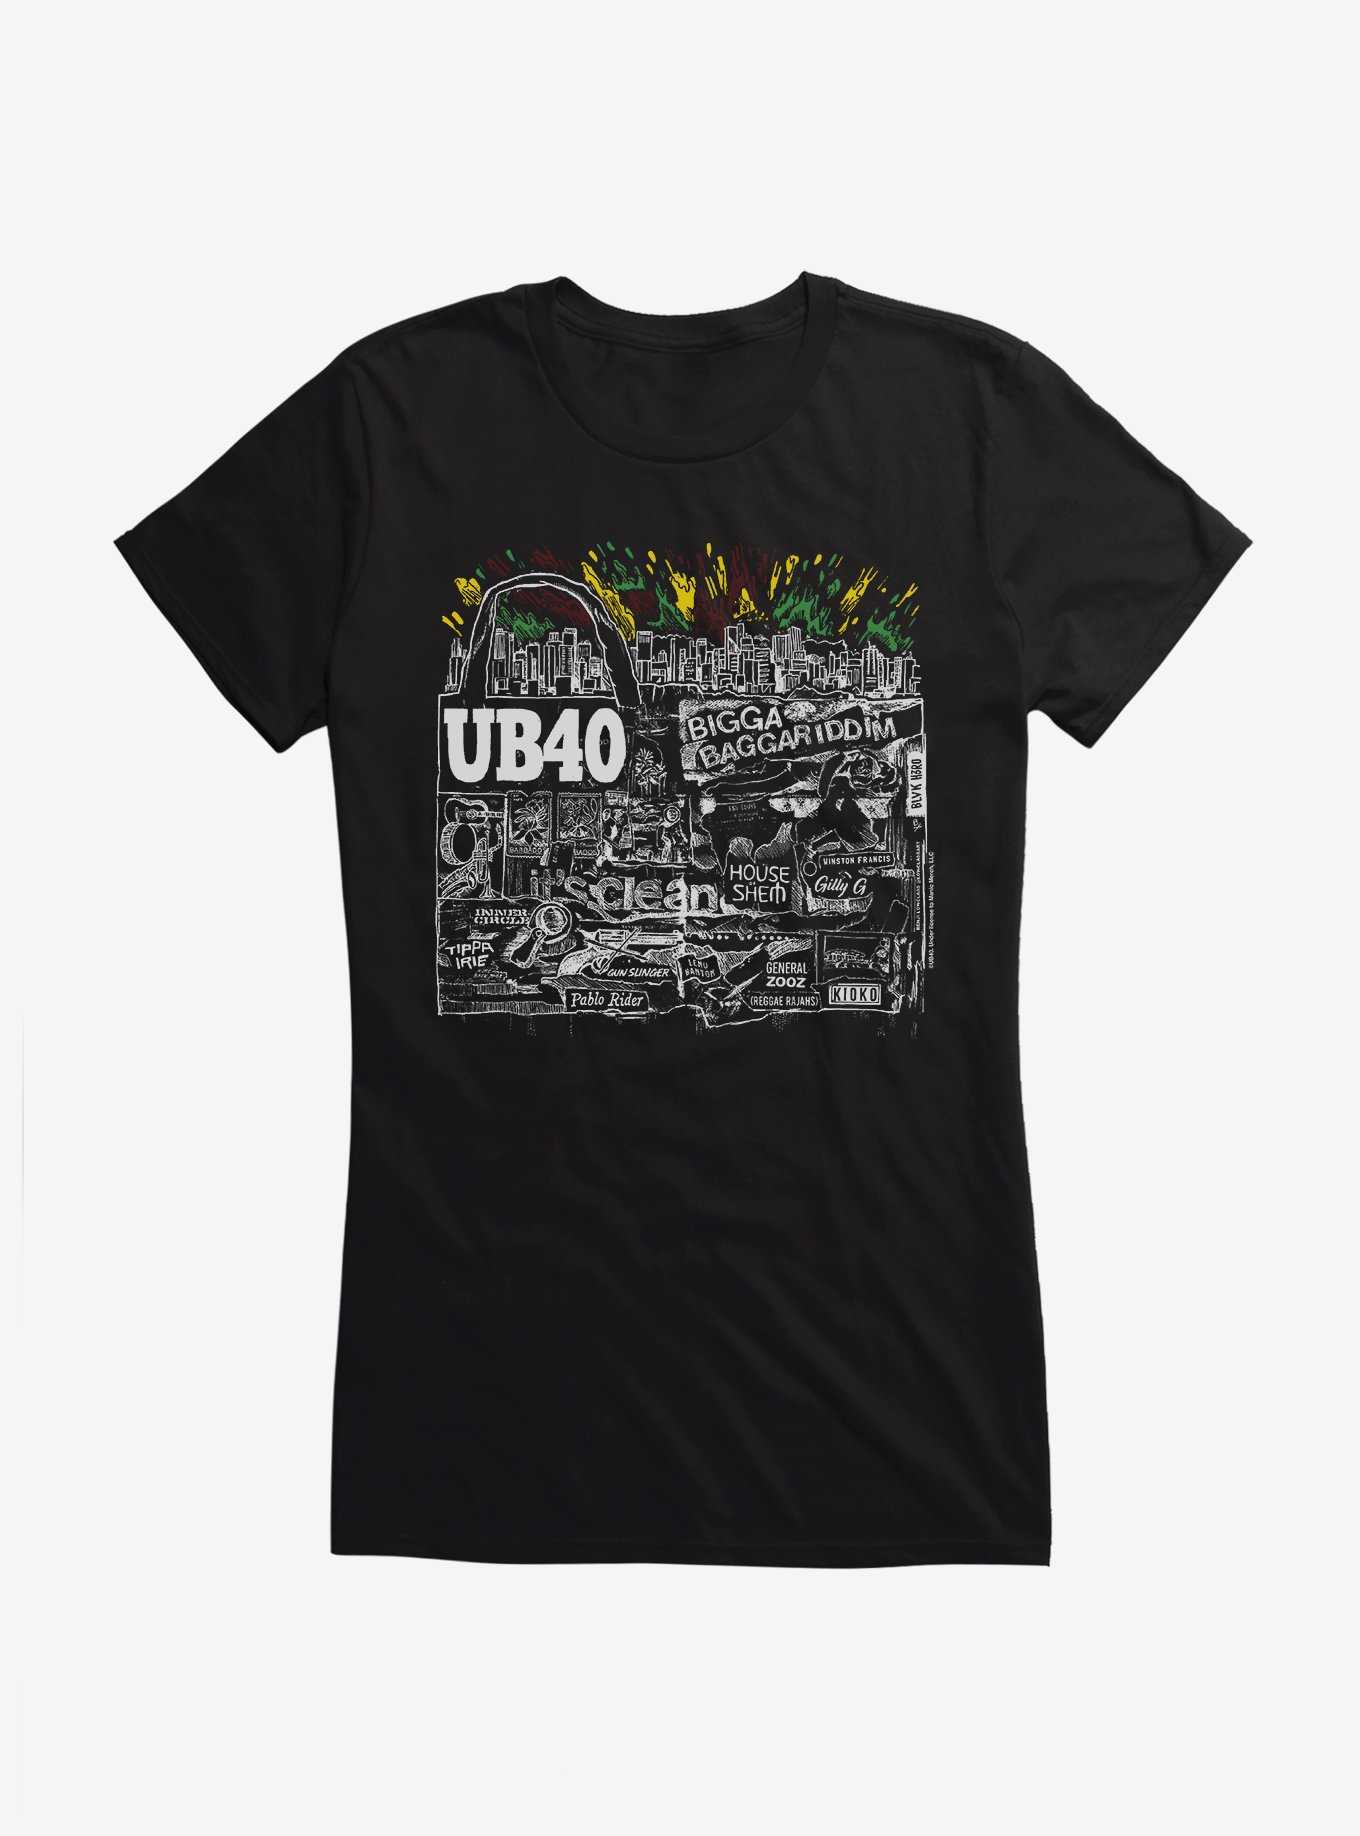 UB40 Bigga Baggariddim Girls T-Shirt, , hi-res